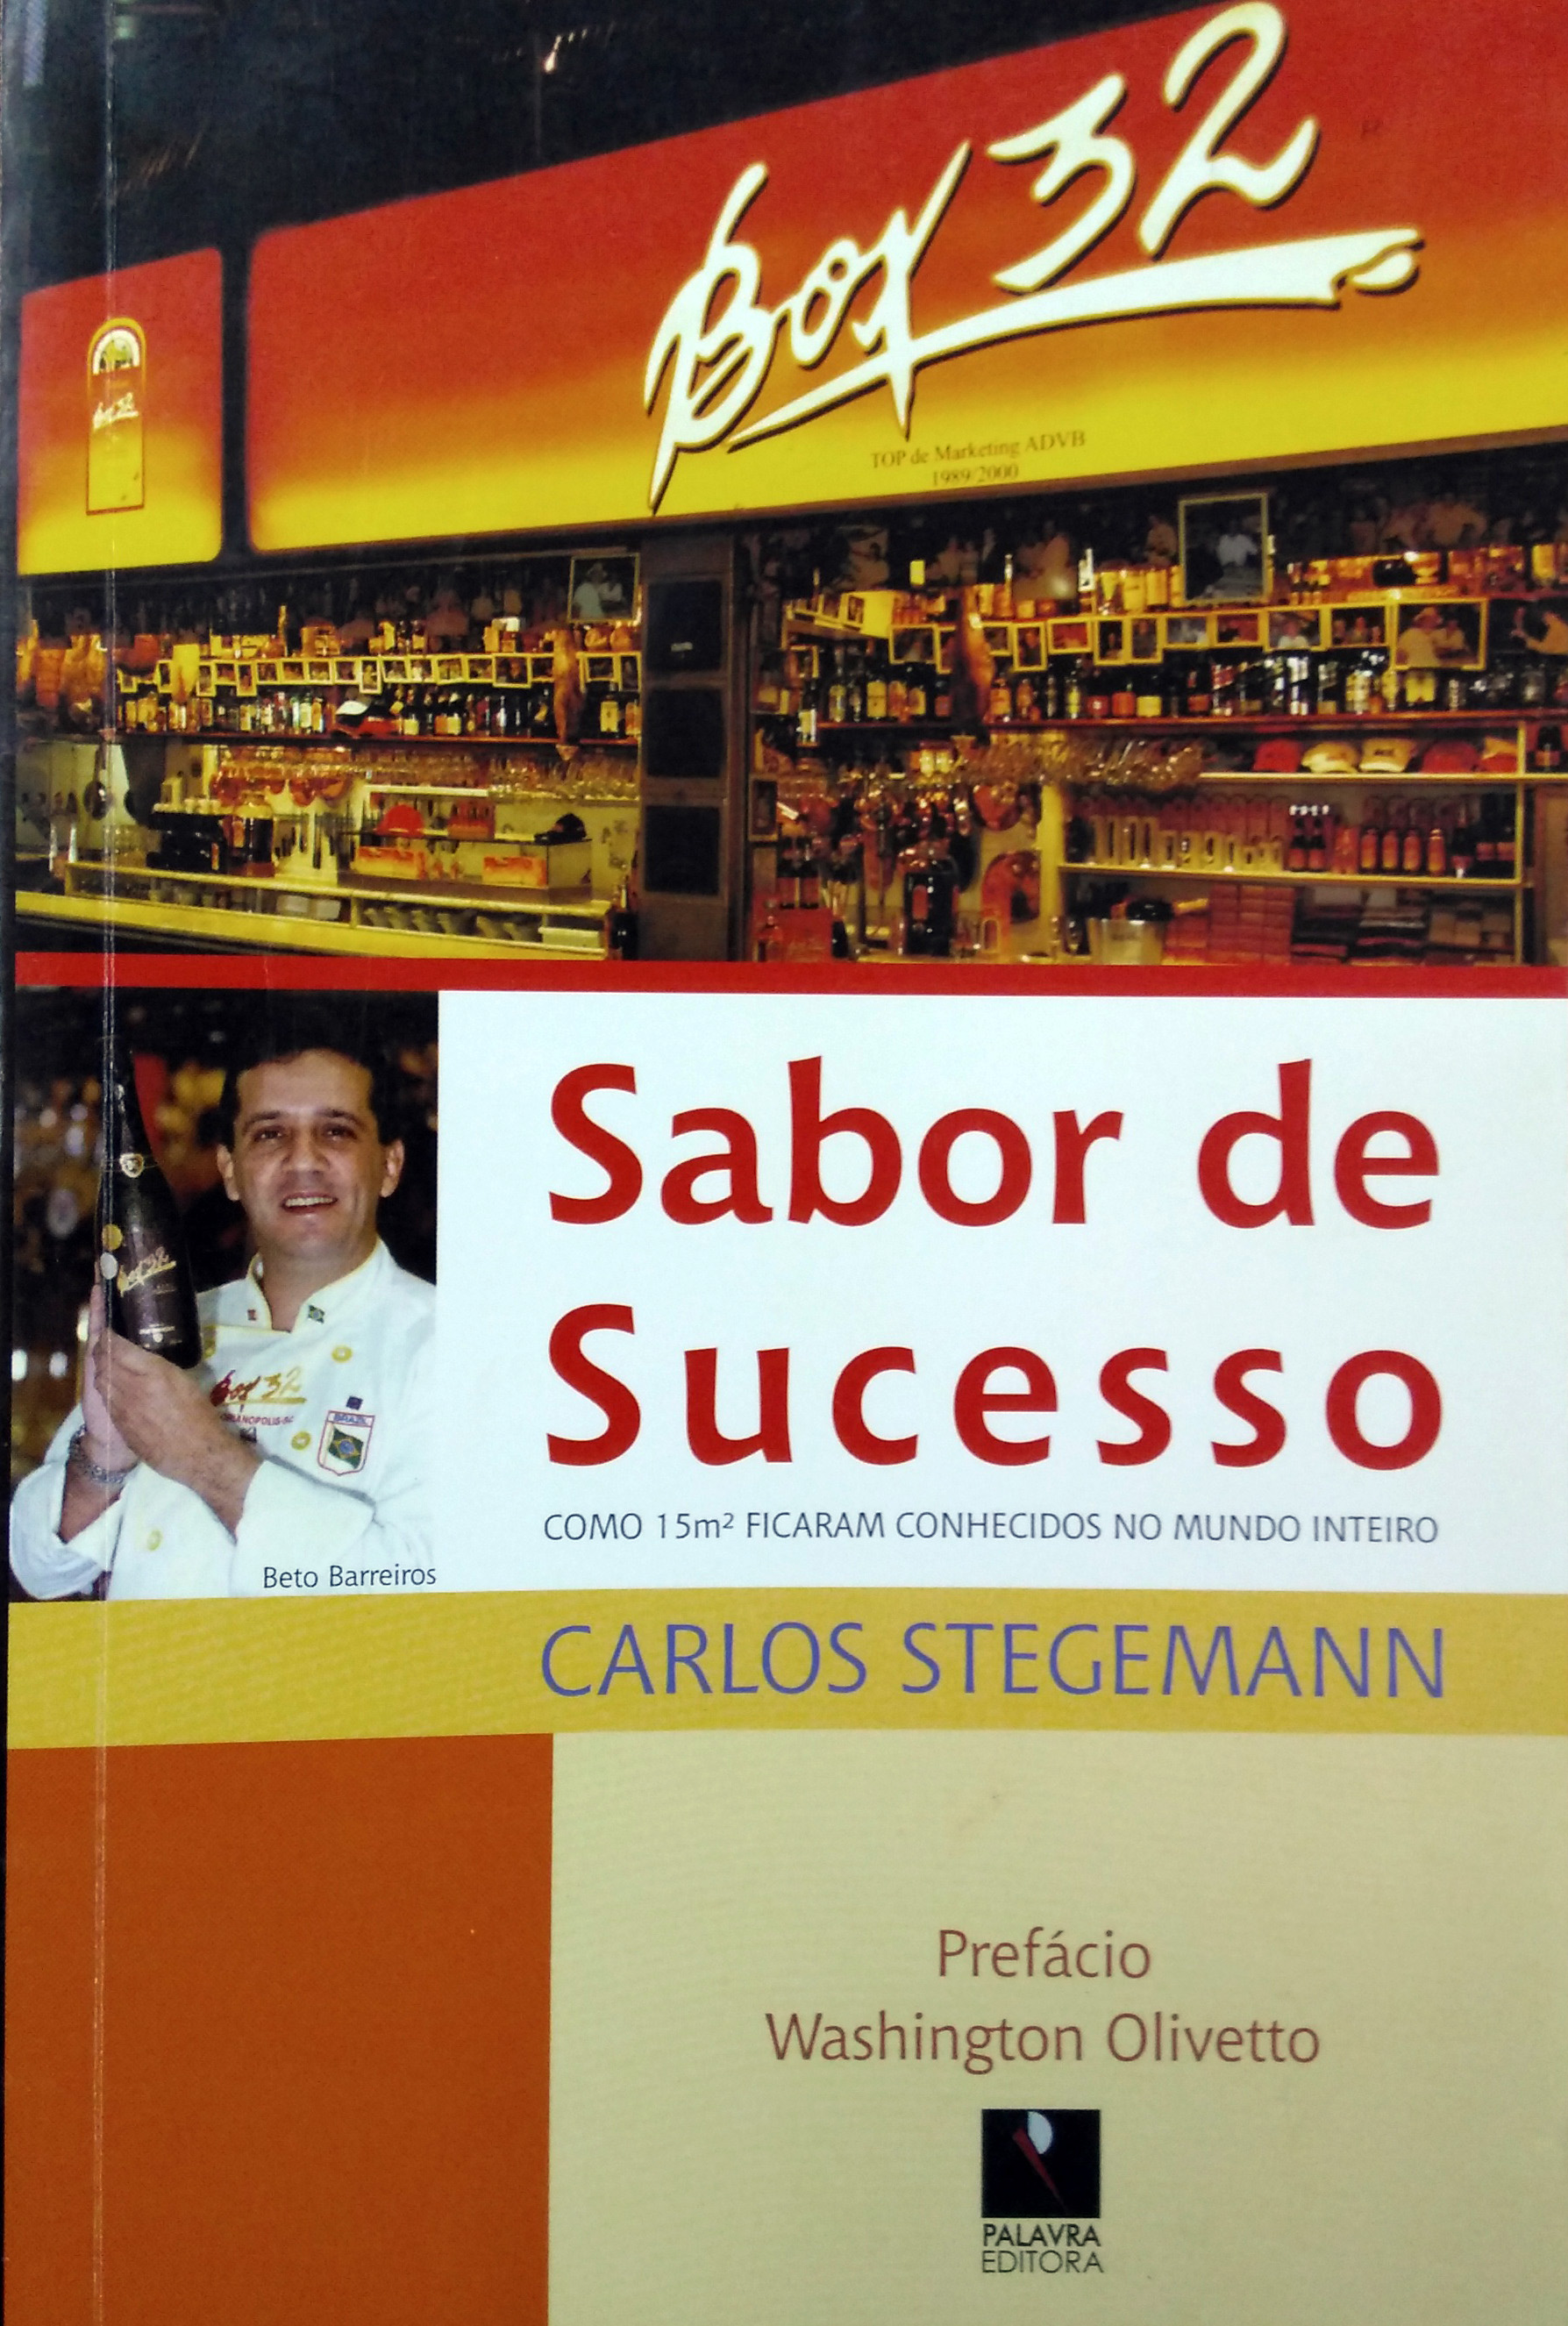 2006 - Lendário bar vira livro - Palavracom